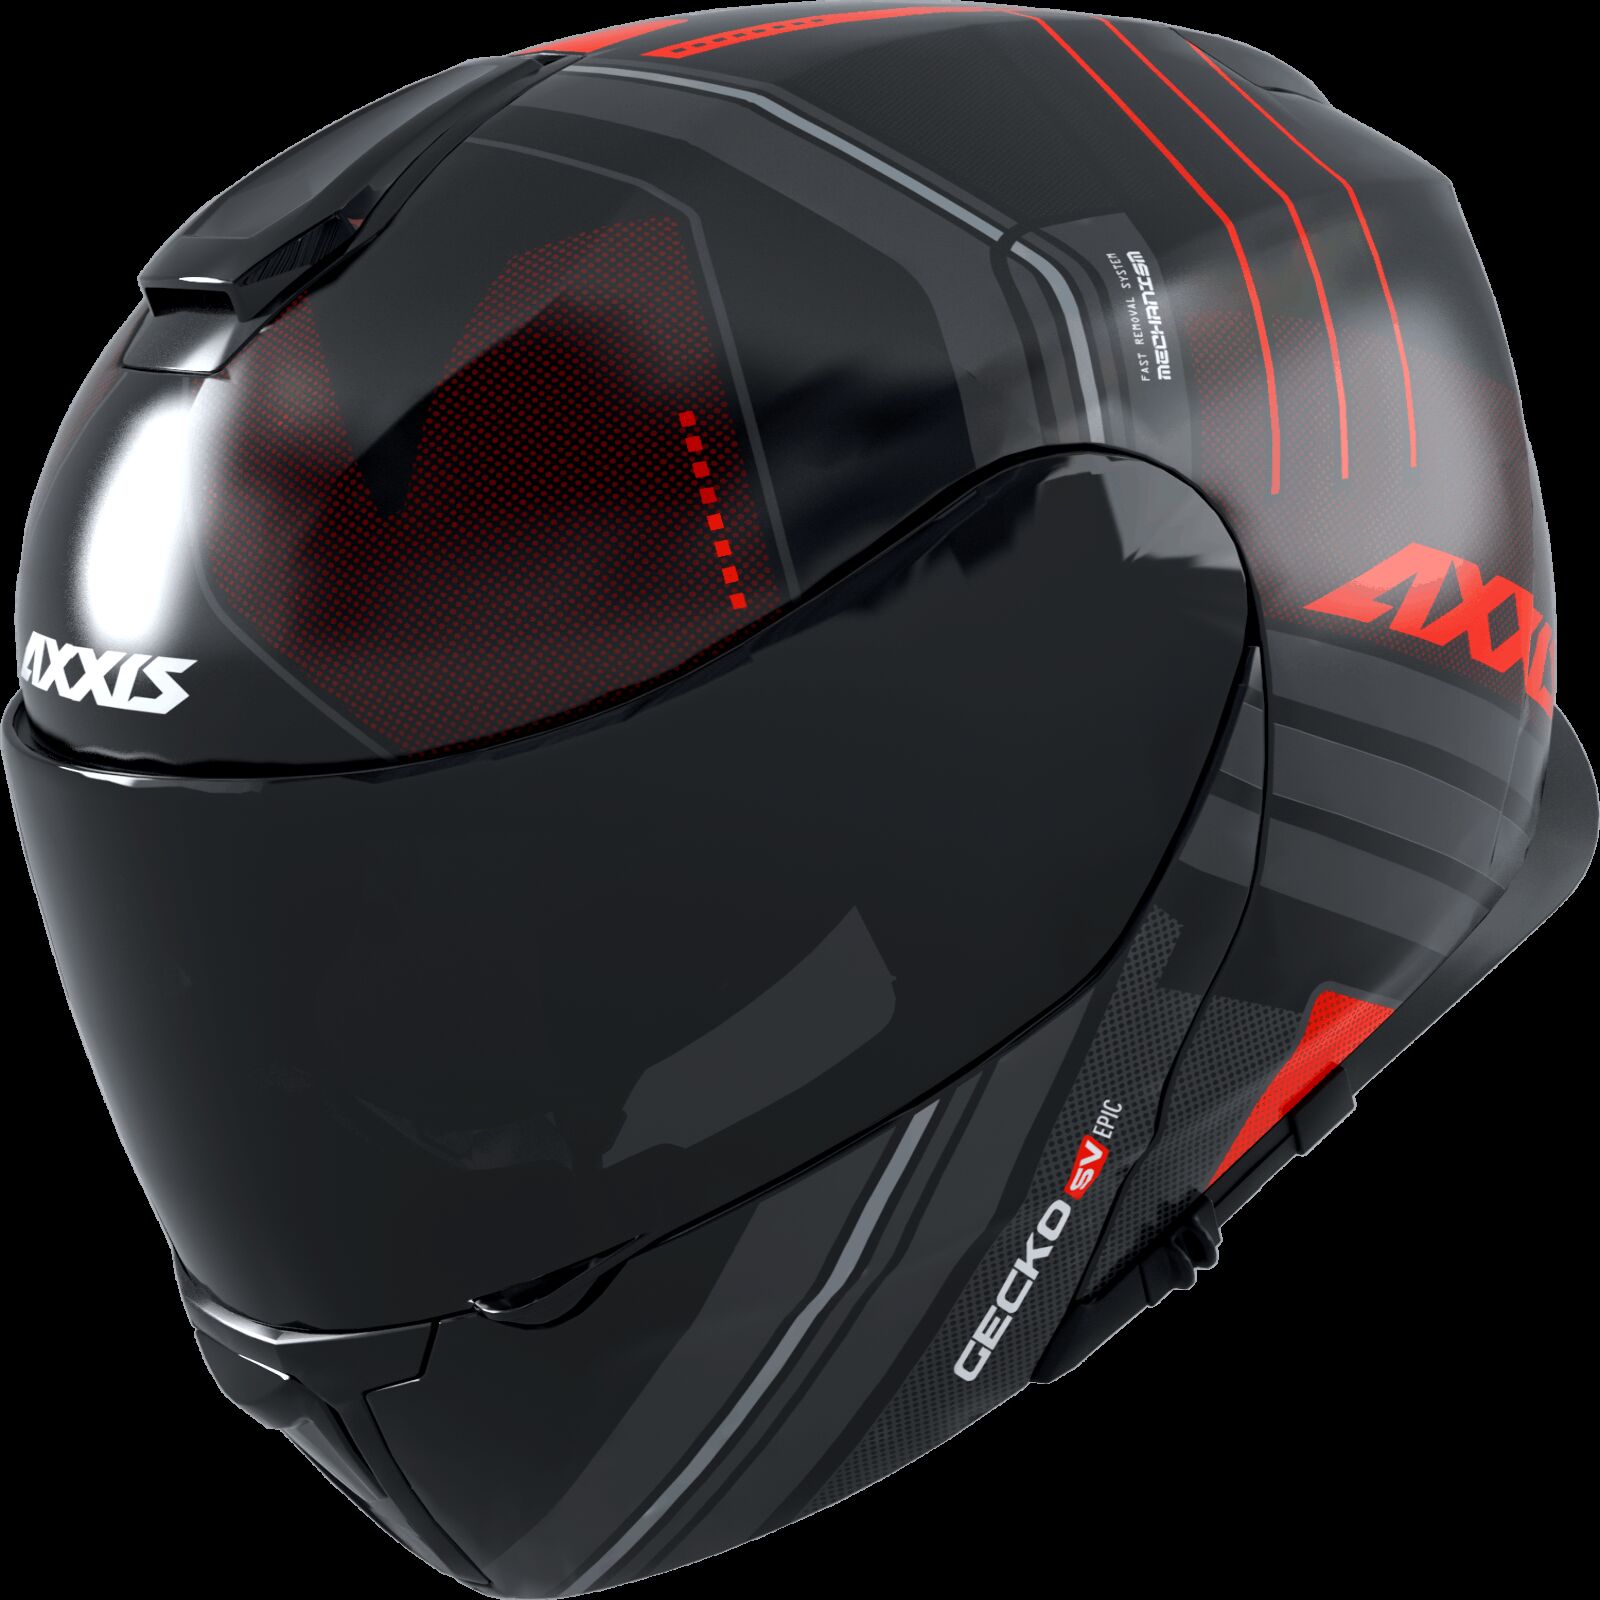 Obrázek produktu Výklopná helma AXXIS GECKO SV ABS epic b5 matná fluor červená XL 42627311537